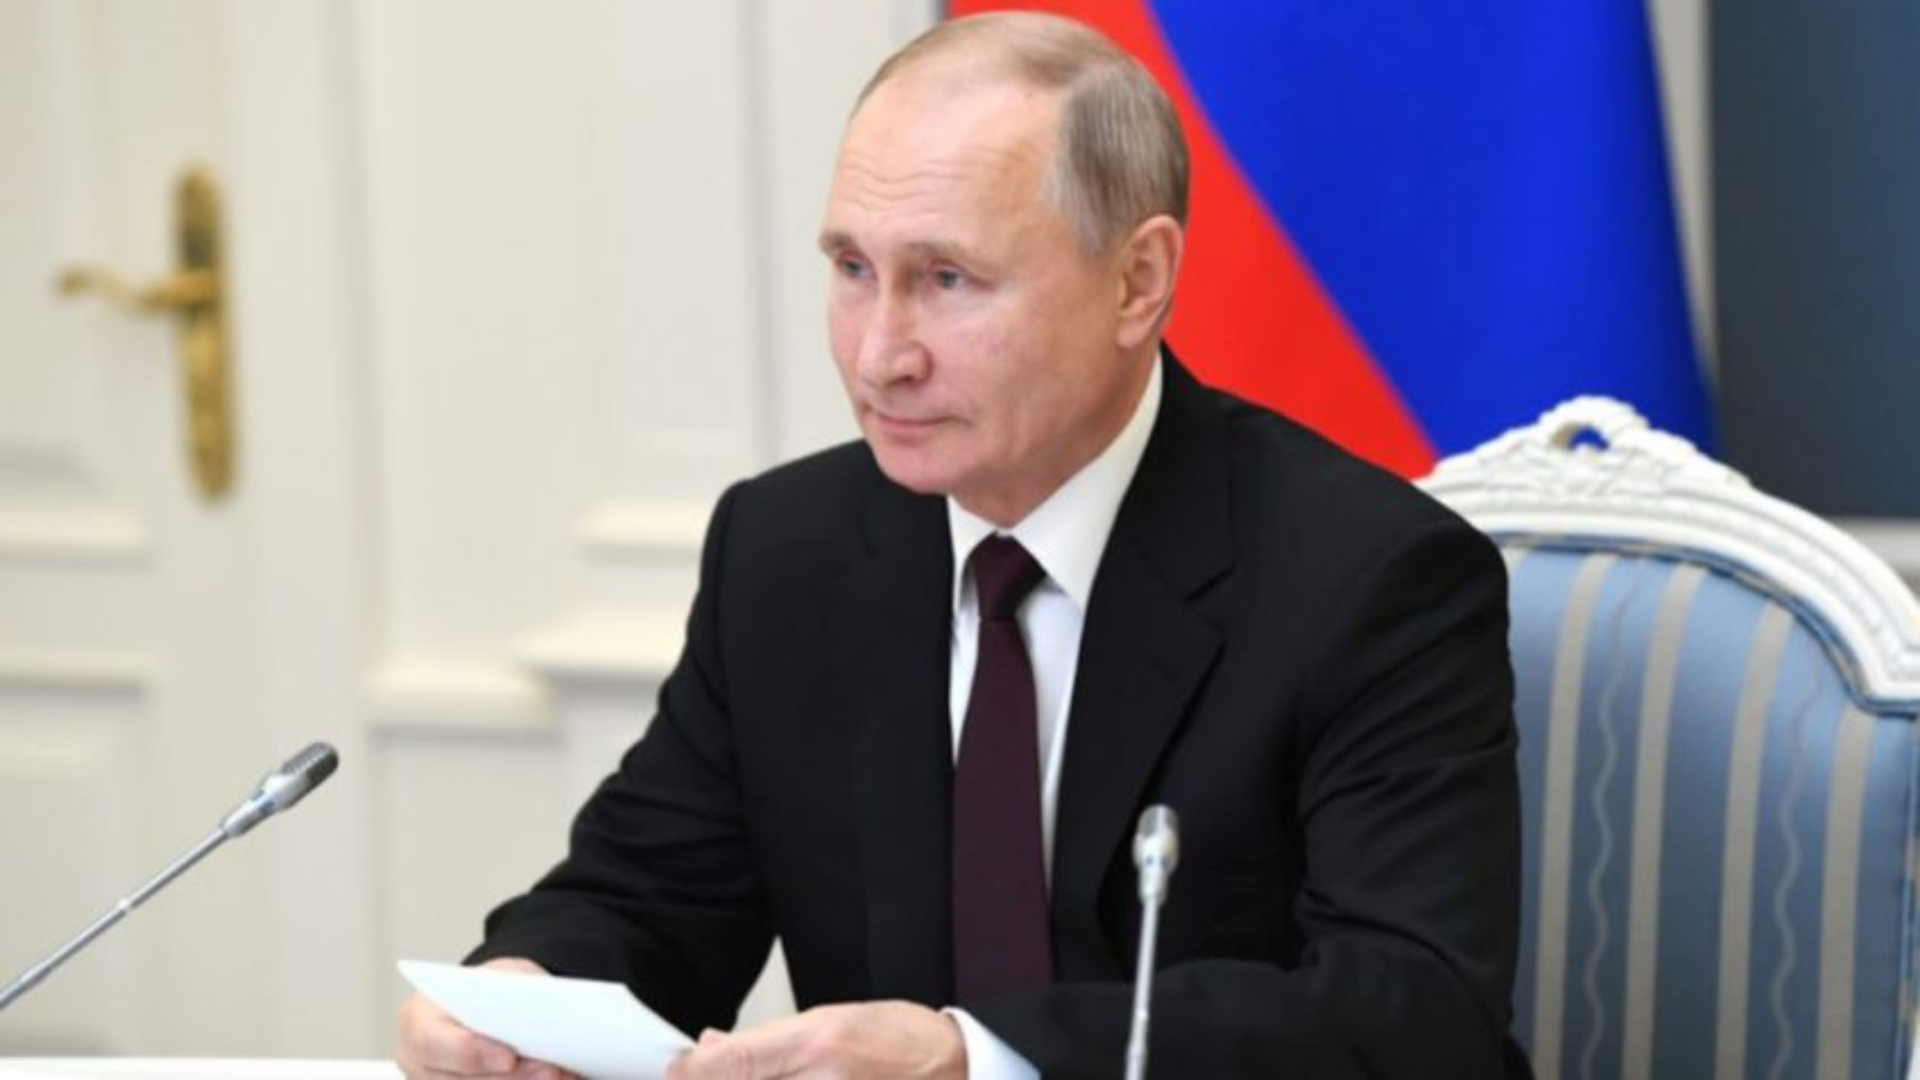 Rússia autoriza envio de tropas para 'manter a paz' em regiões de conflito na Ucrânia. Foto de Putin em uma cadeira, assinando um documento. Ele usa terno preto, tem pele branca e é calvo. O fundo está desfocado.